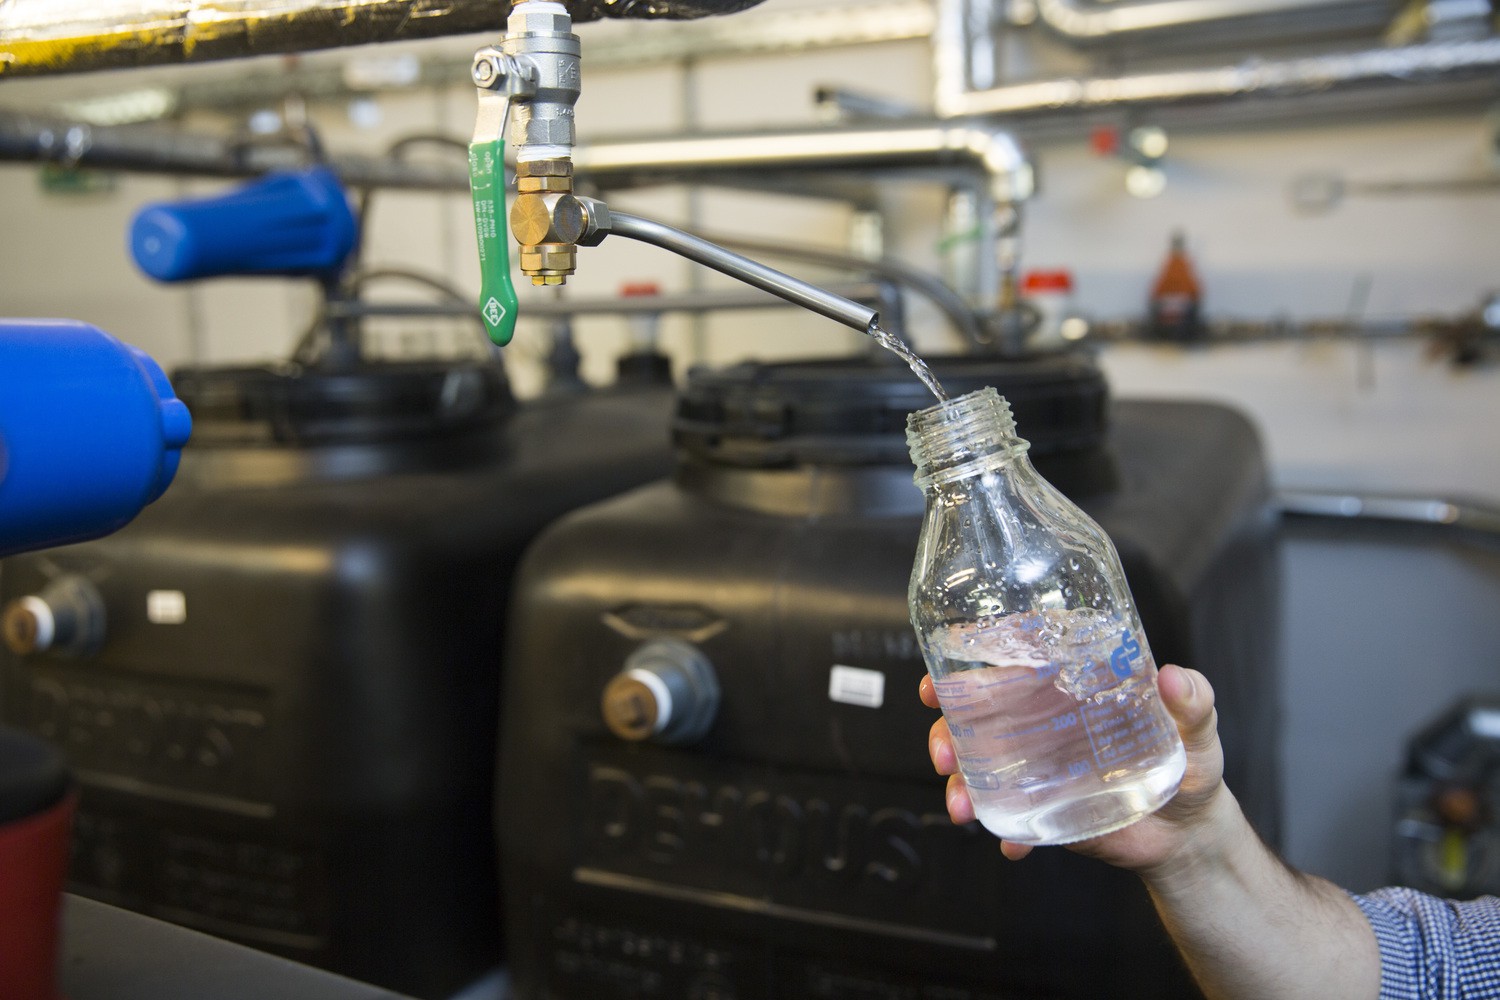 Die Prüfung der Qualität des Trinkwassers am UKL kann nun von Mitarbeitern des Hygieneinstituts selbst vorgenommen werden. Das Labor erhielt dazu kürzlich die nötige Akkreditierung.